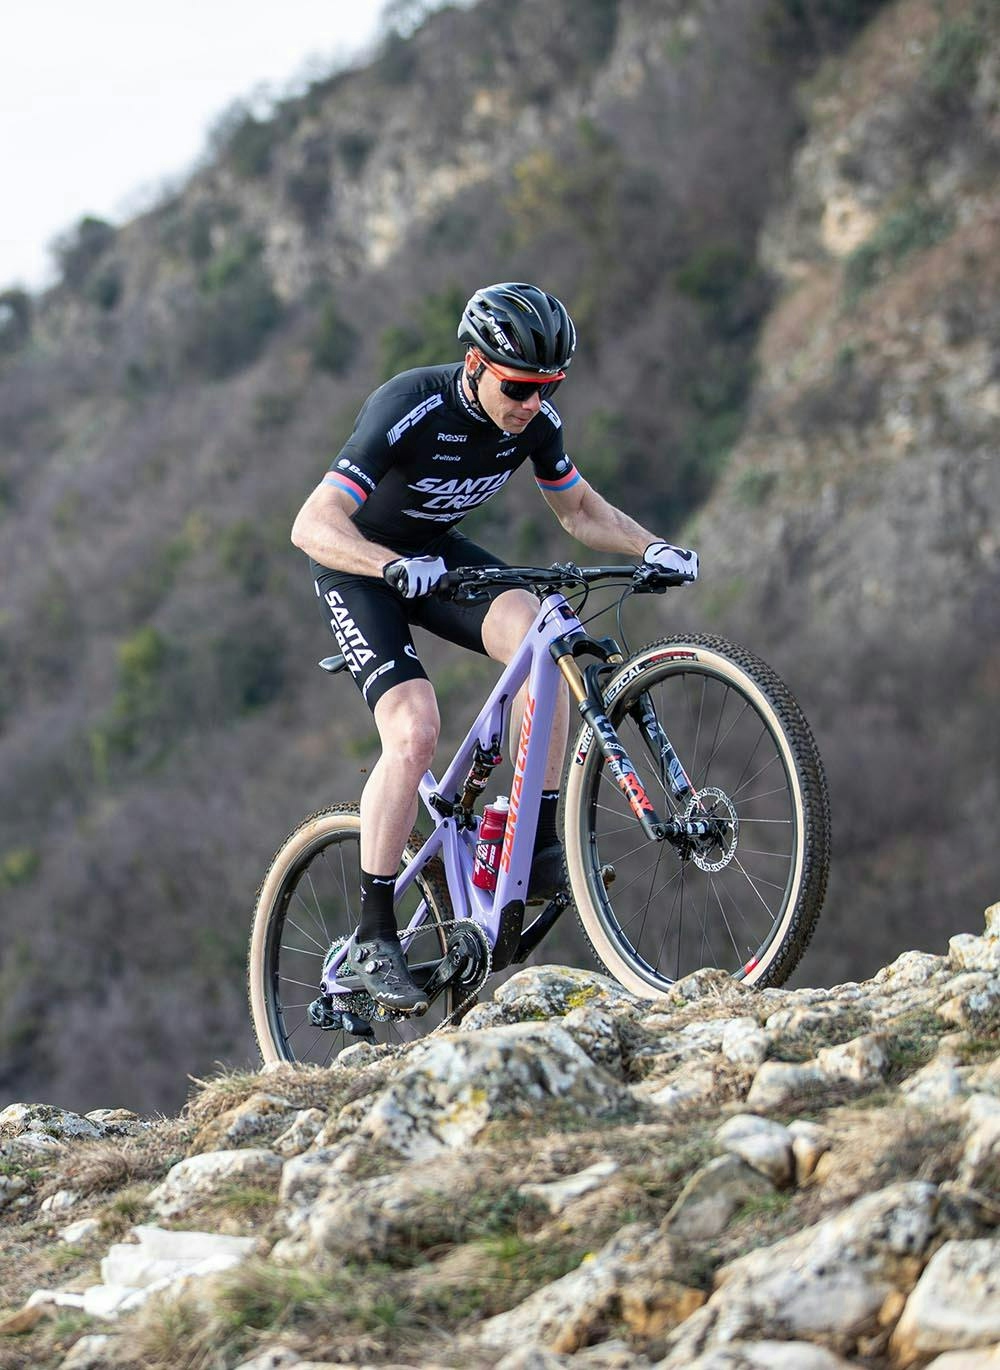 Maxime Marotte riding his Santa Cruz Blur